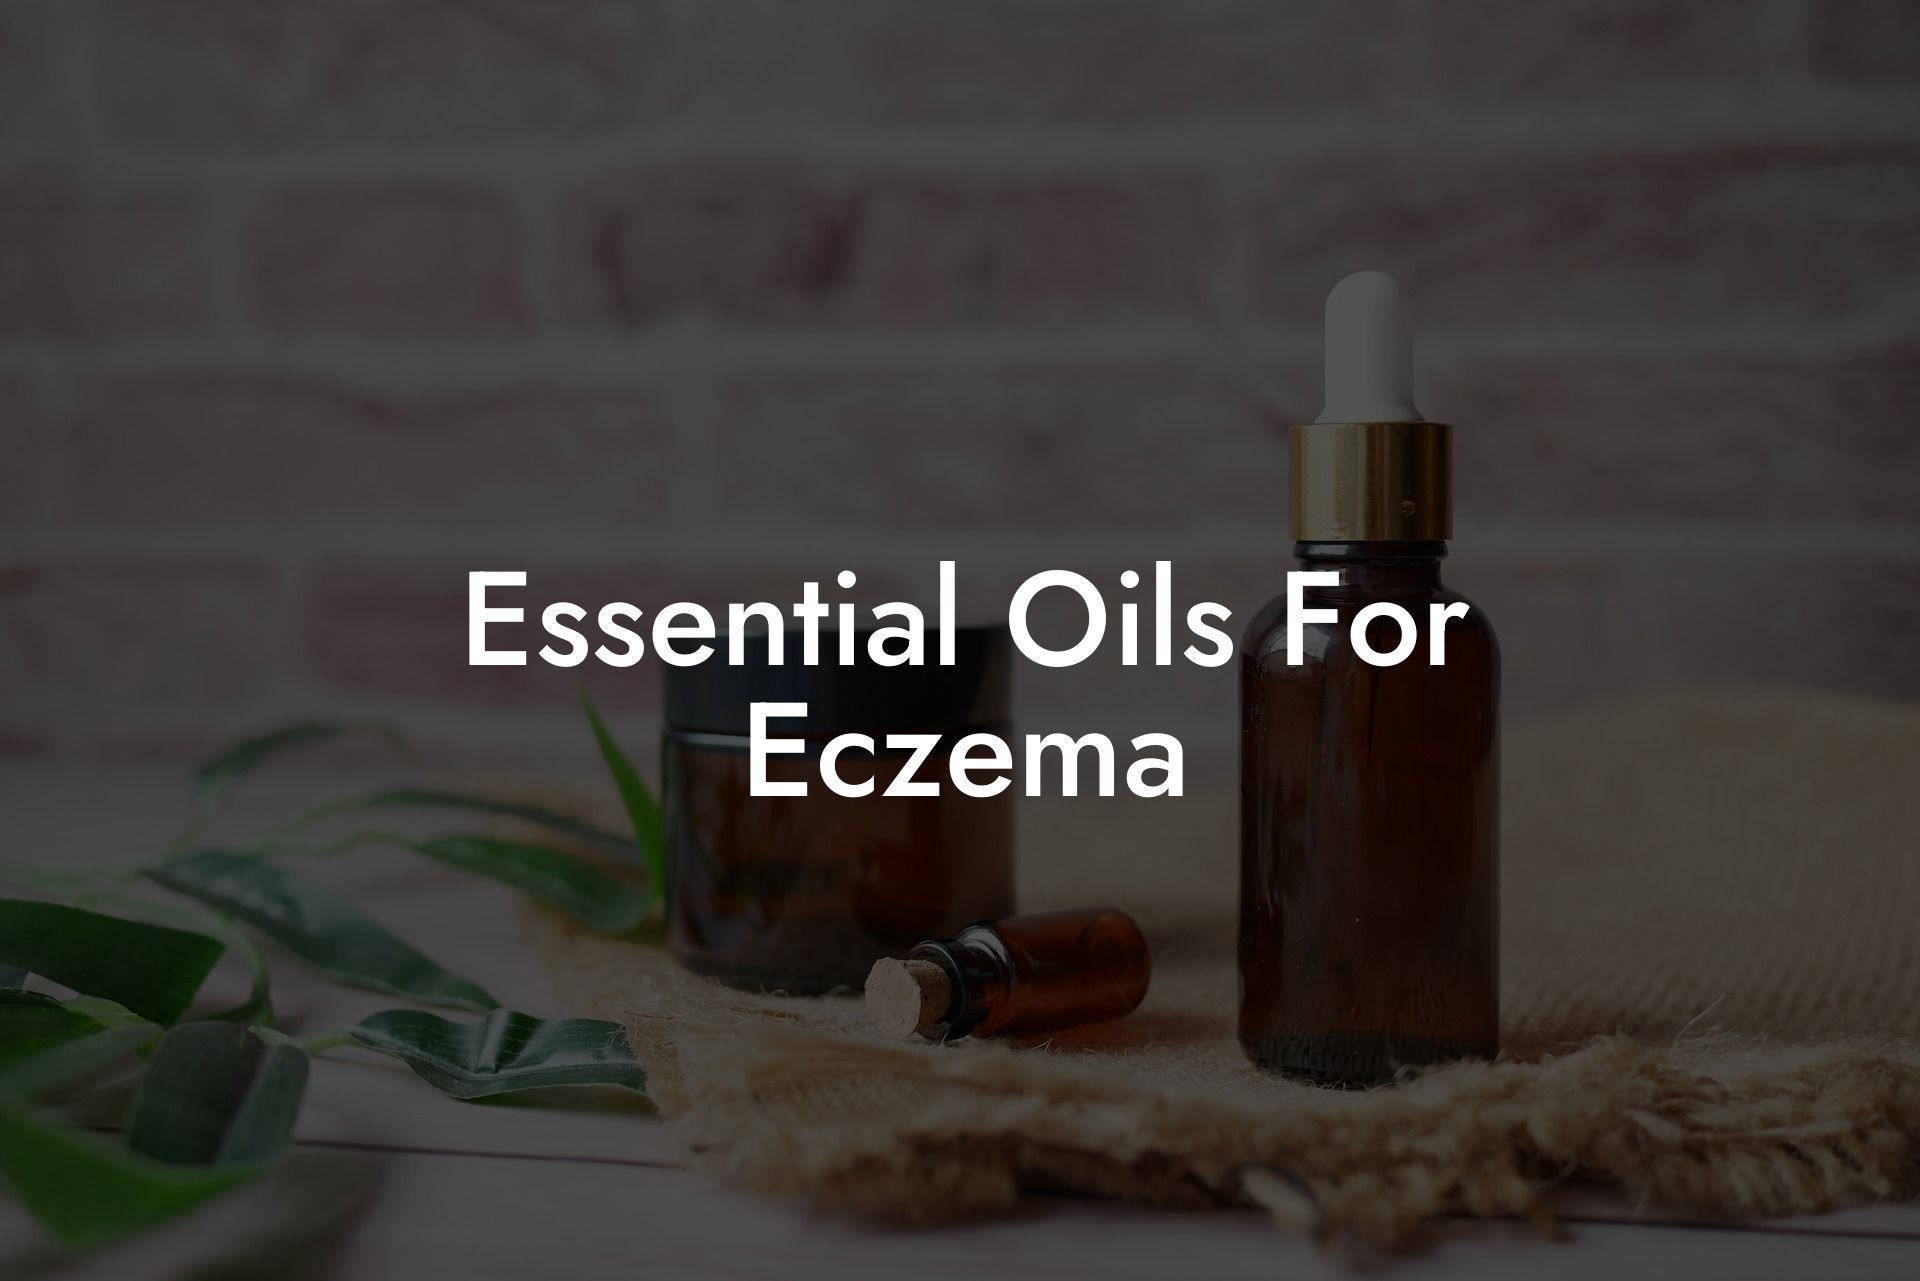 Essential Oils For Eczema